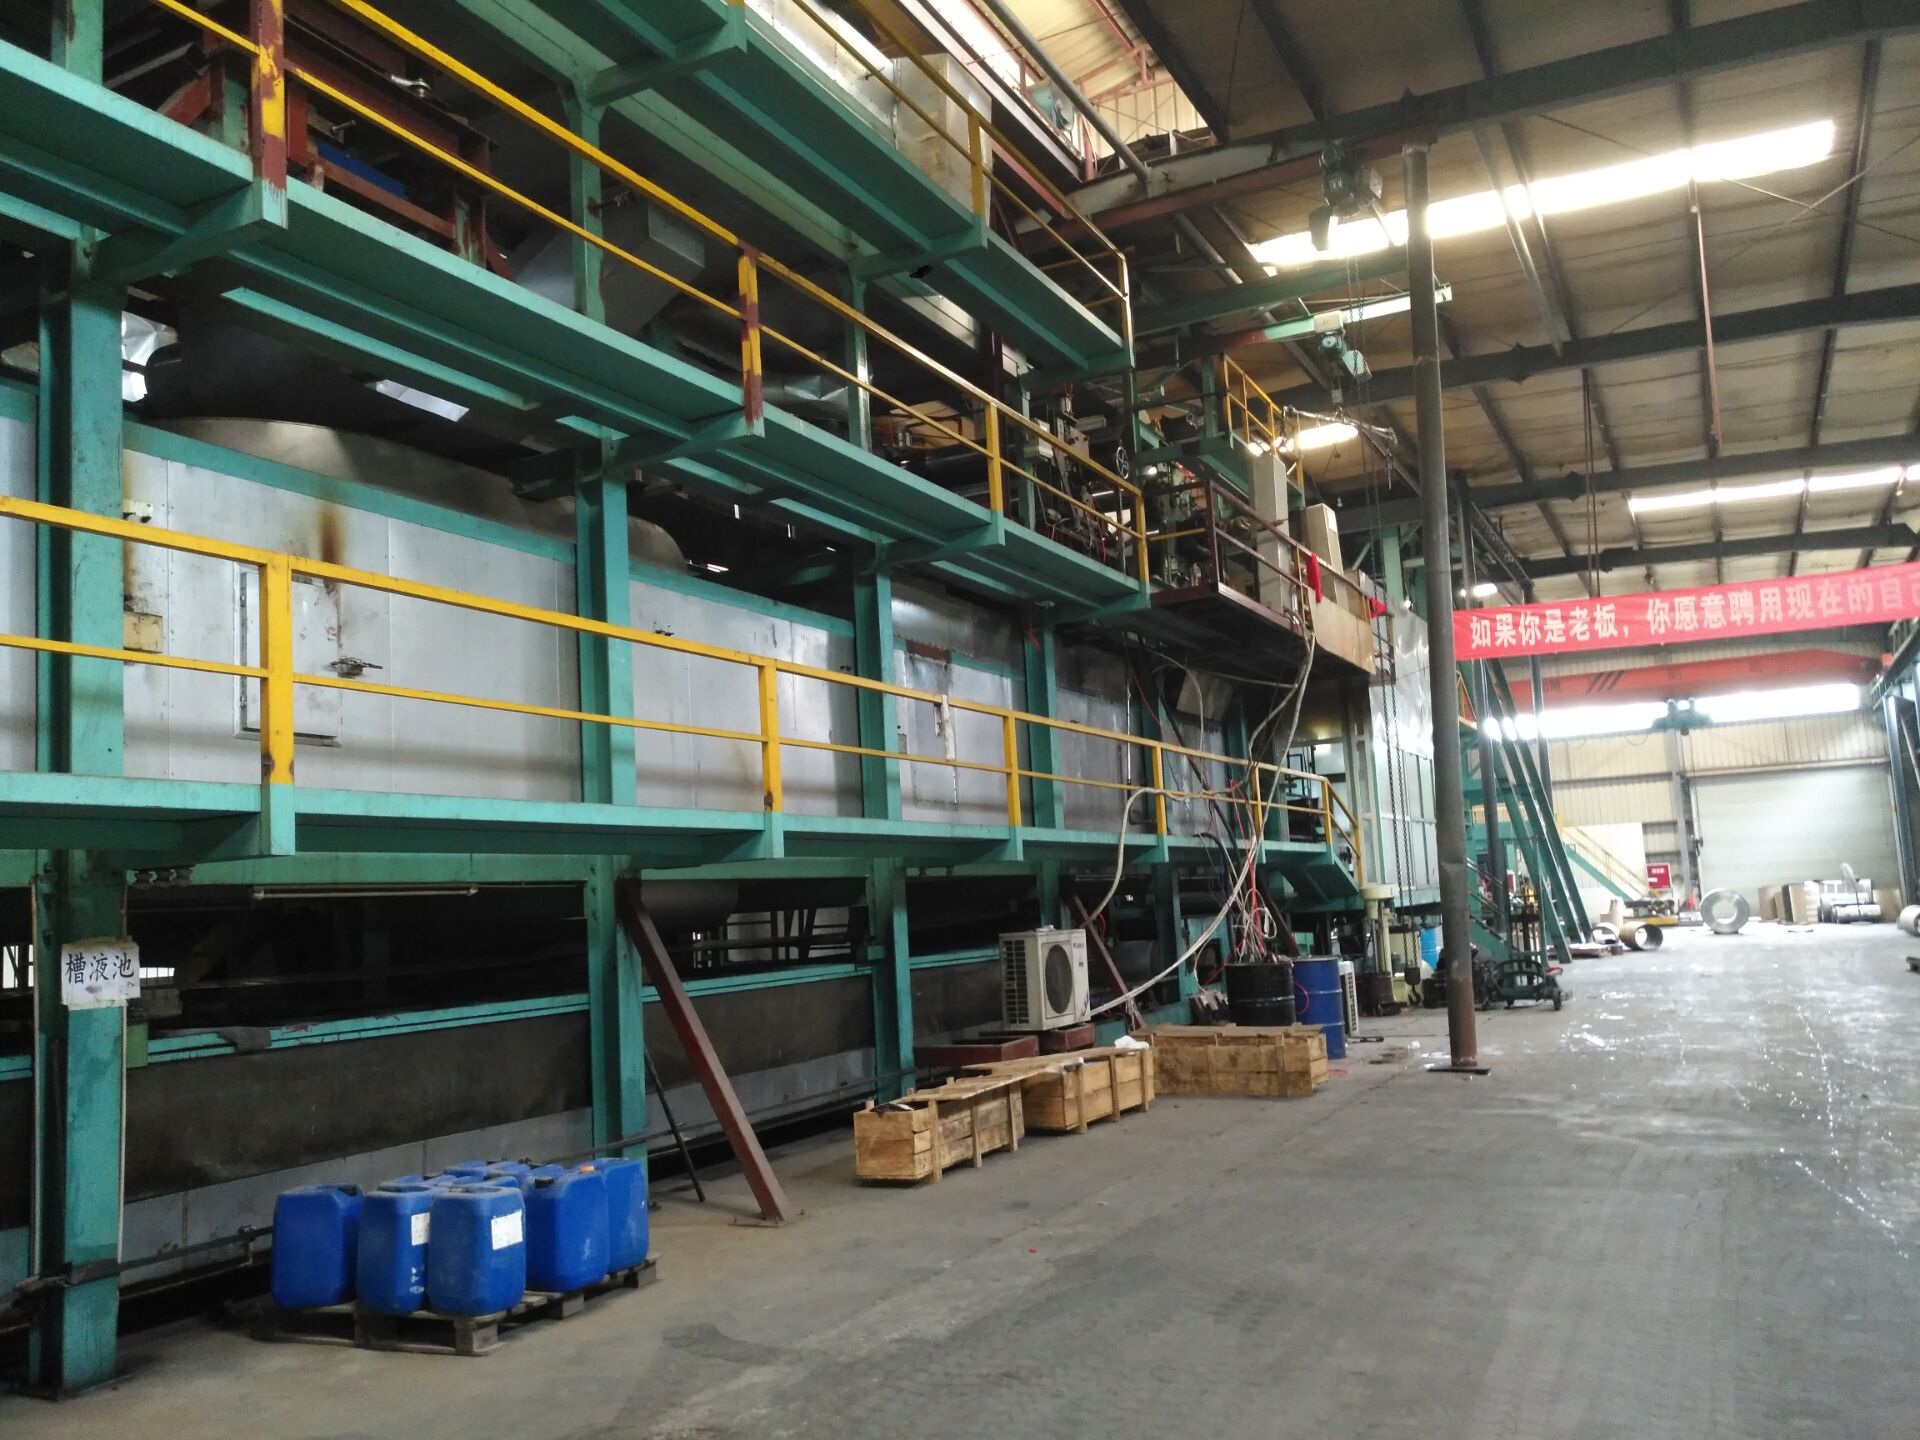 阳江市搬迁工厂回收/啤酒厂设备回收/化工设备回收